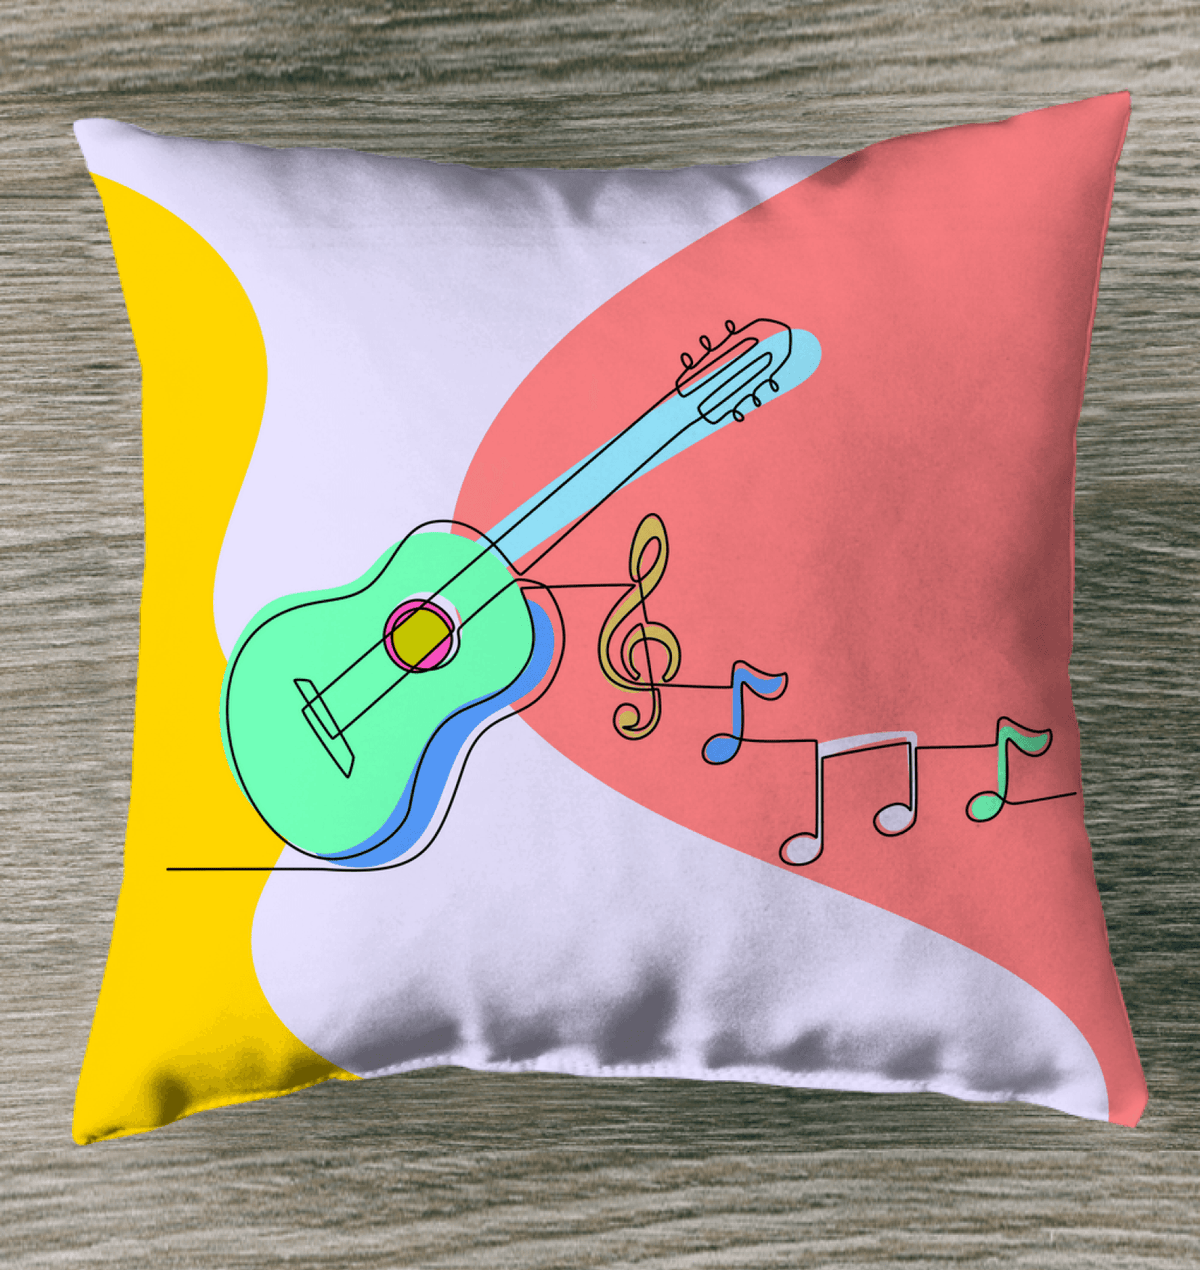 Guitar Line art Indoor Pillow - Beyond T-shirts